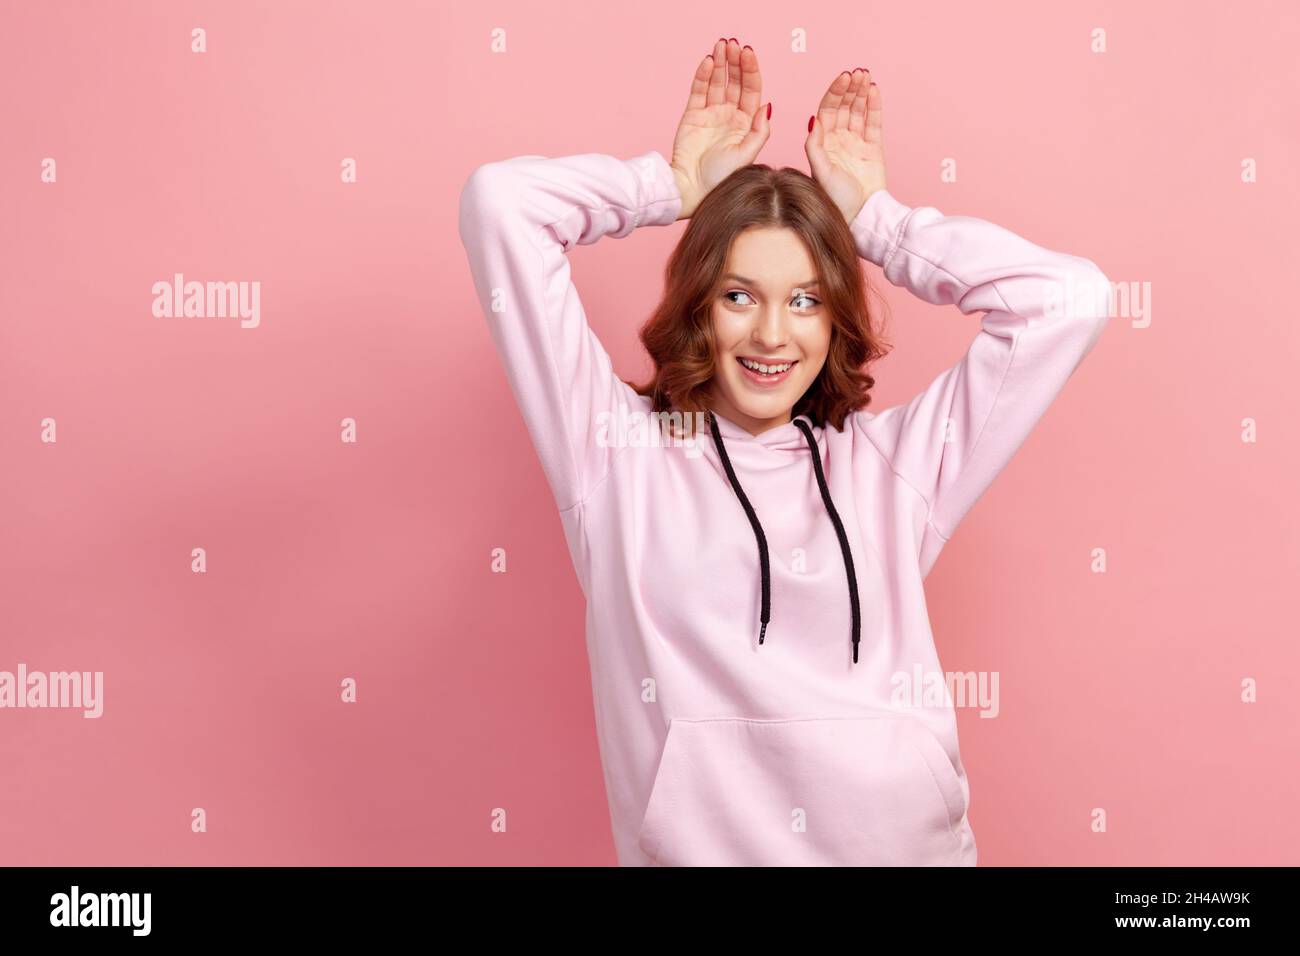 Porträt einer unbeschwerten glücklichen Brünette junge Frau im Kapuzenpullover, die lustige Hasenohren mit Händen am Kopf macht, kindhaftes Verhalten, verspielte optimistische Stimmung. Innenaufnahme des Studios isoliert auf rosa Hintergrund Stockfoto